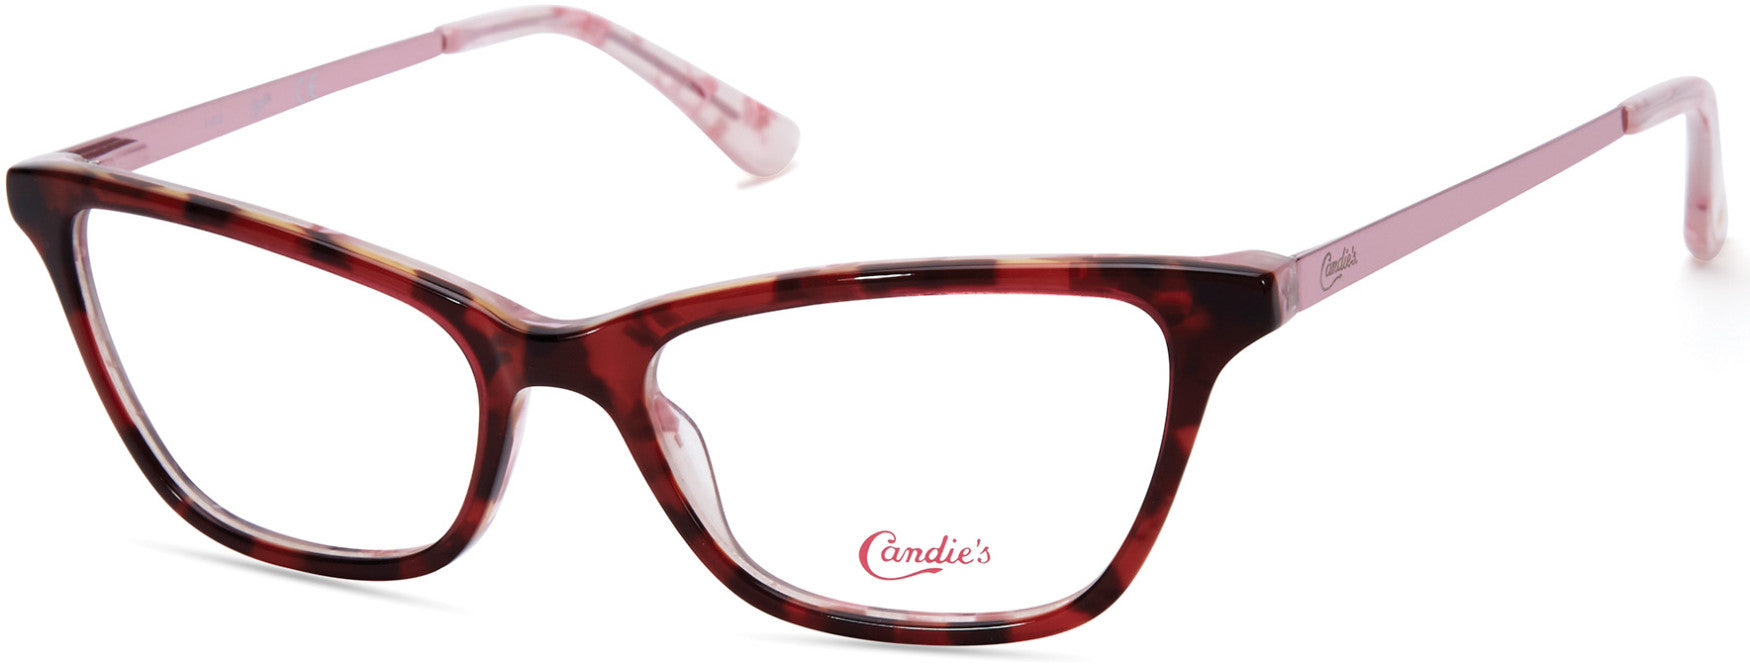 Candies CA0170 Geometric Eyeglasses 074-074 - Pink 